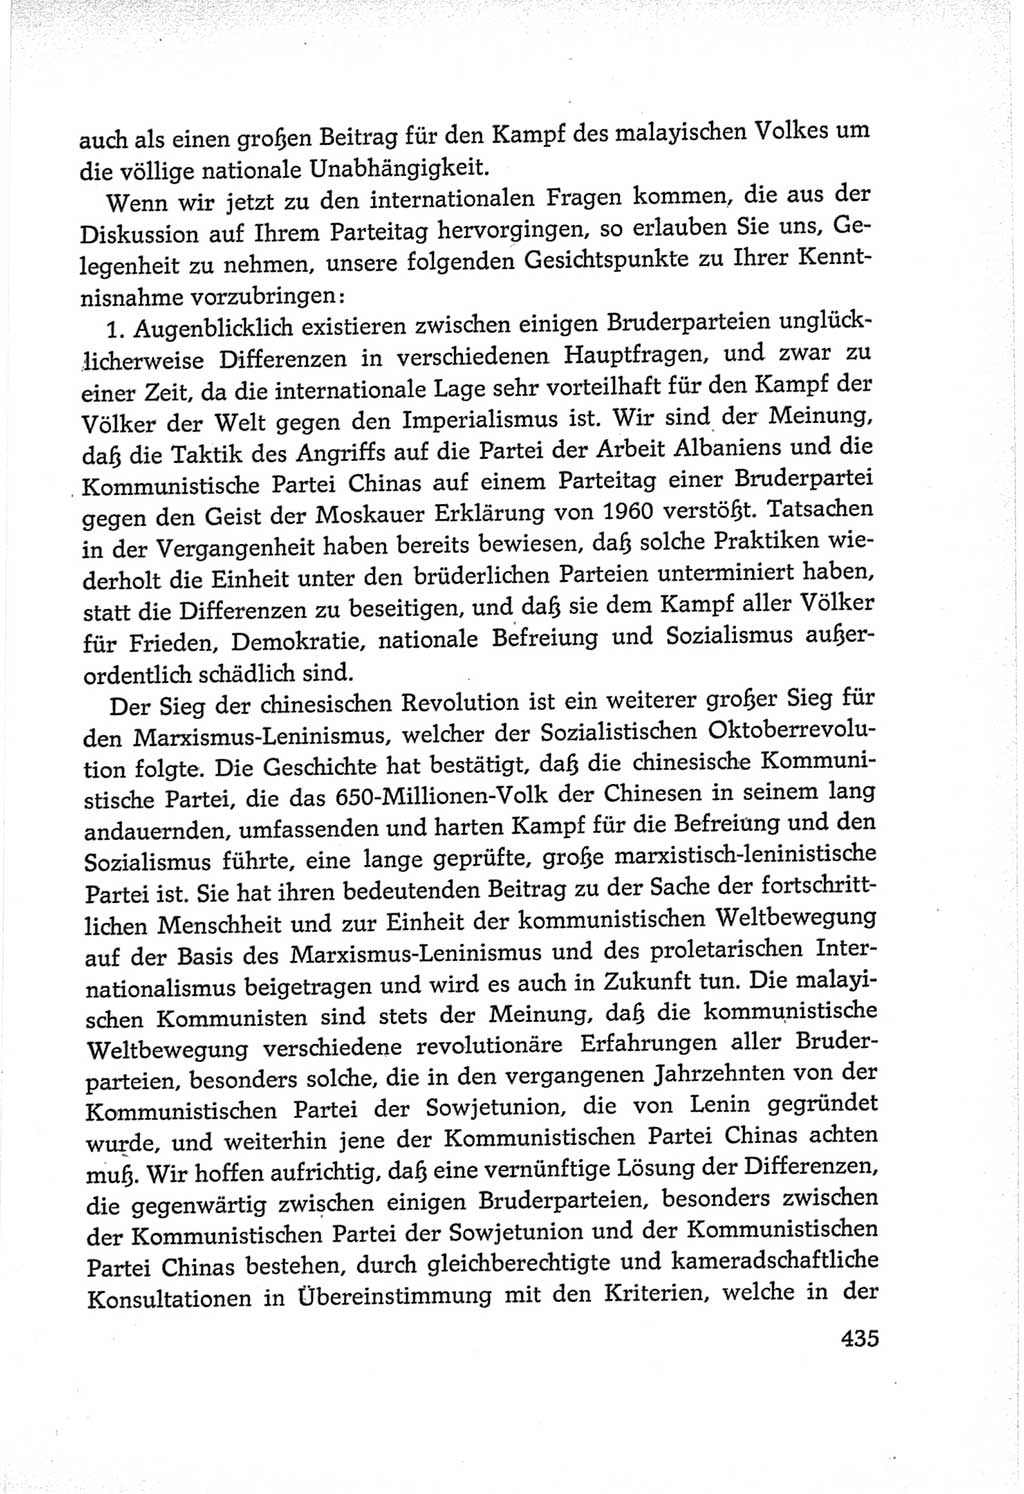 Protokoll der Verhandlungen des Ⅵ. Parteitages der Sozialistischen Einheitspartei Deutschlands (SED) [Deutsche Demokratische Republik (DDR)] 1963, Band Ⅱ, Seite 435 (Prot. Verh. Ⅵ. PT SED DDR 1963, Bd. Ⅱ, S. 435)